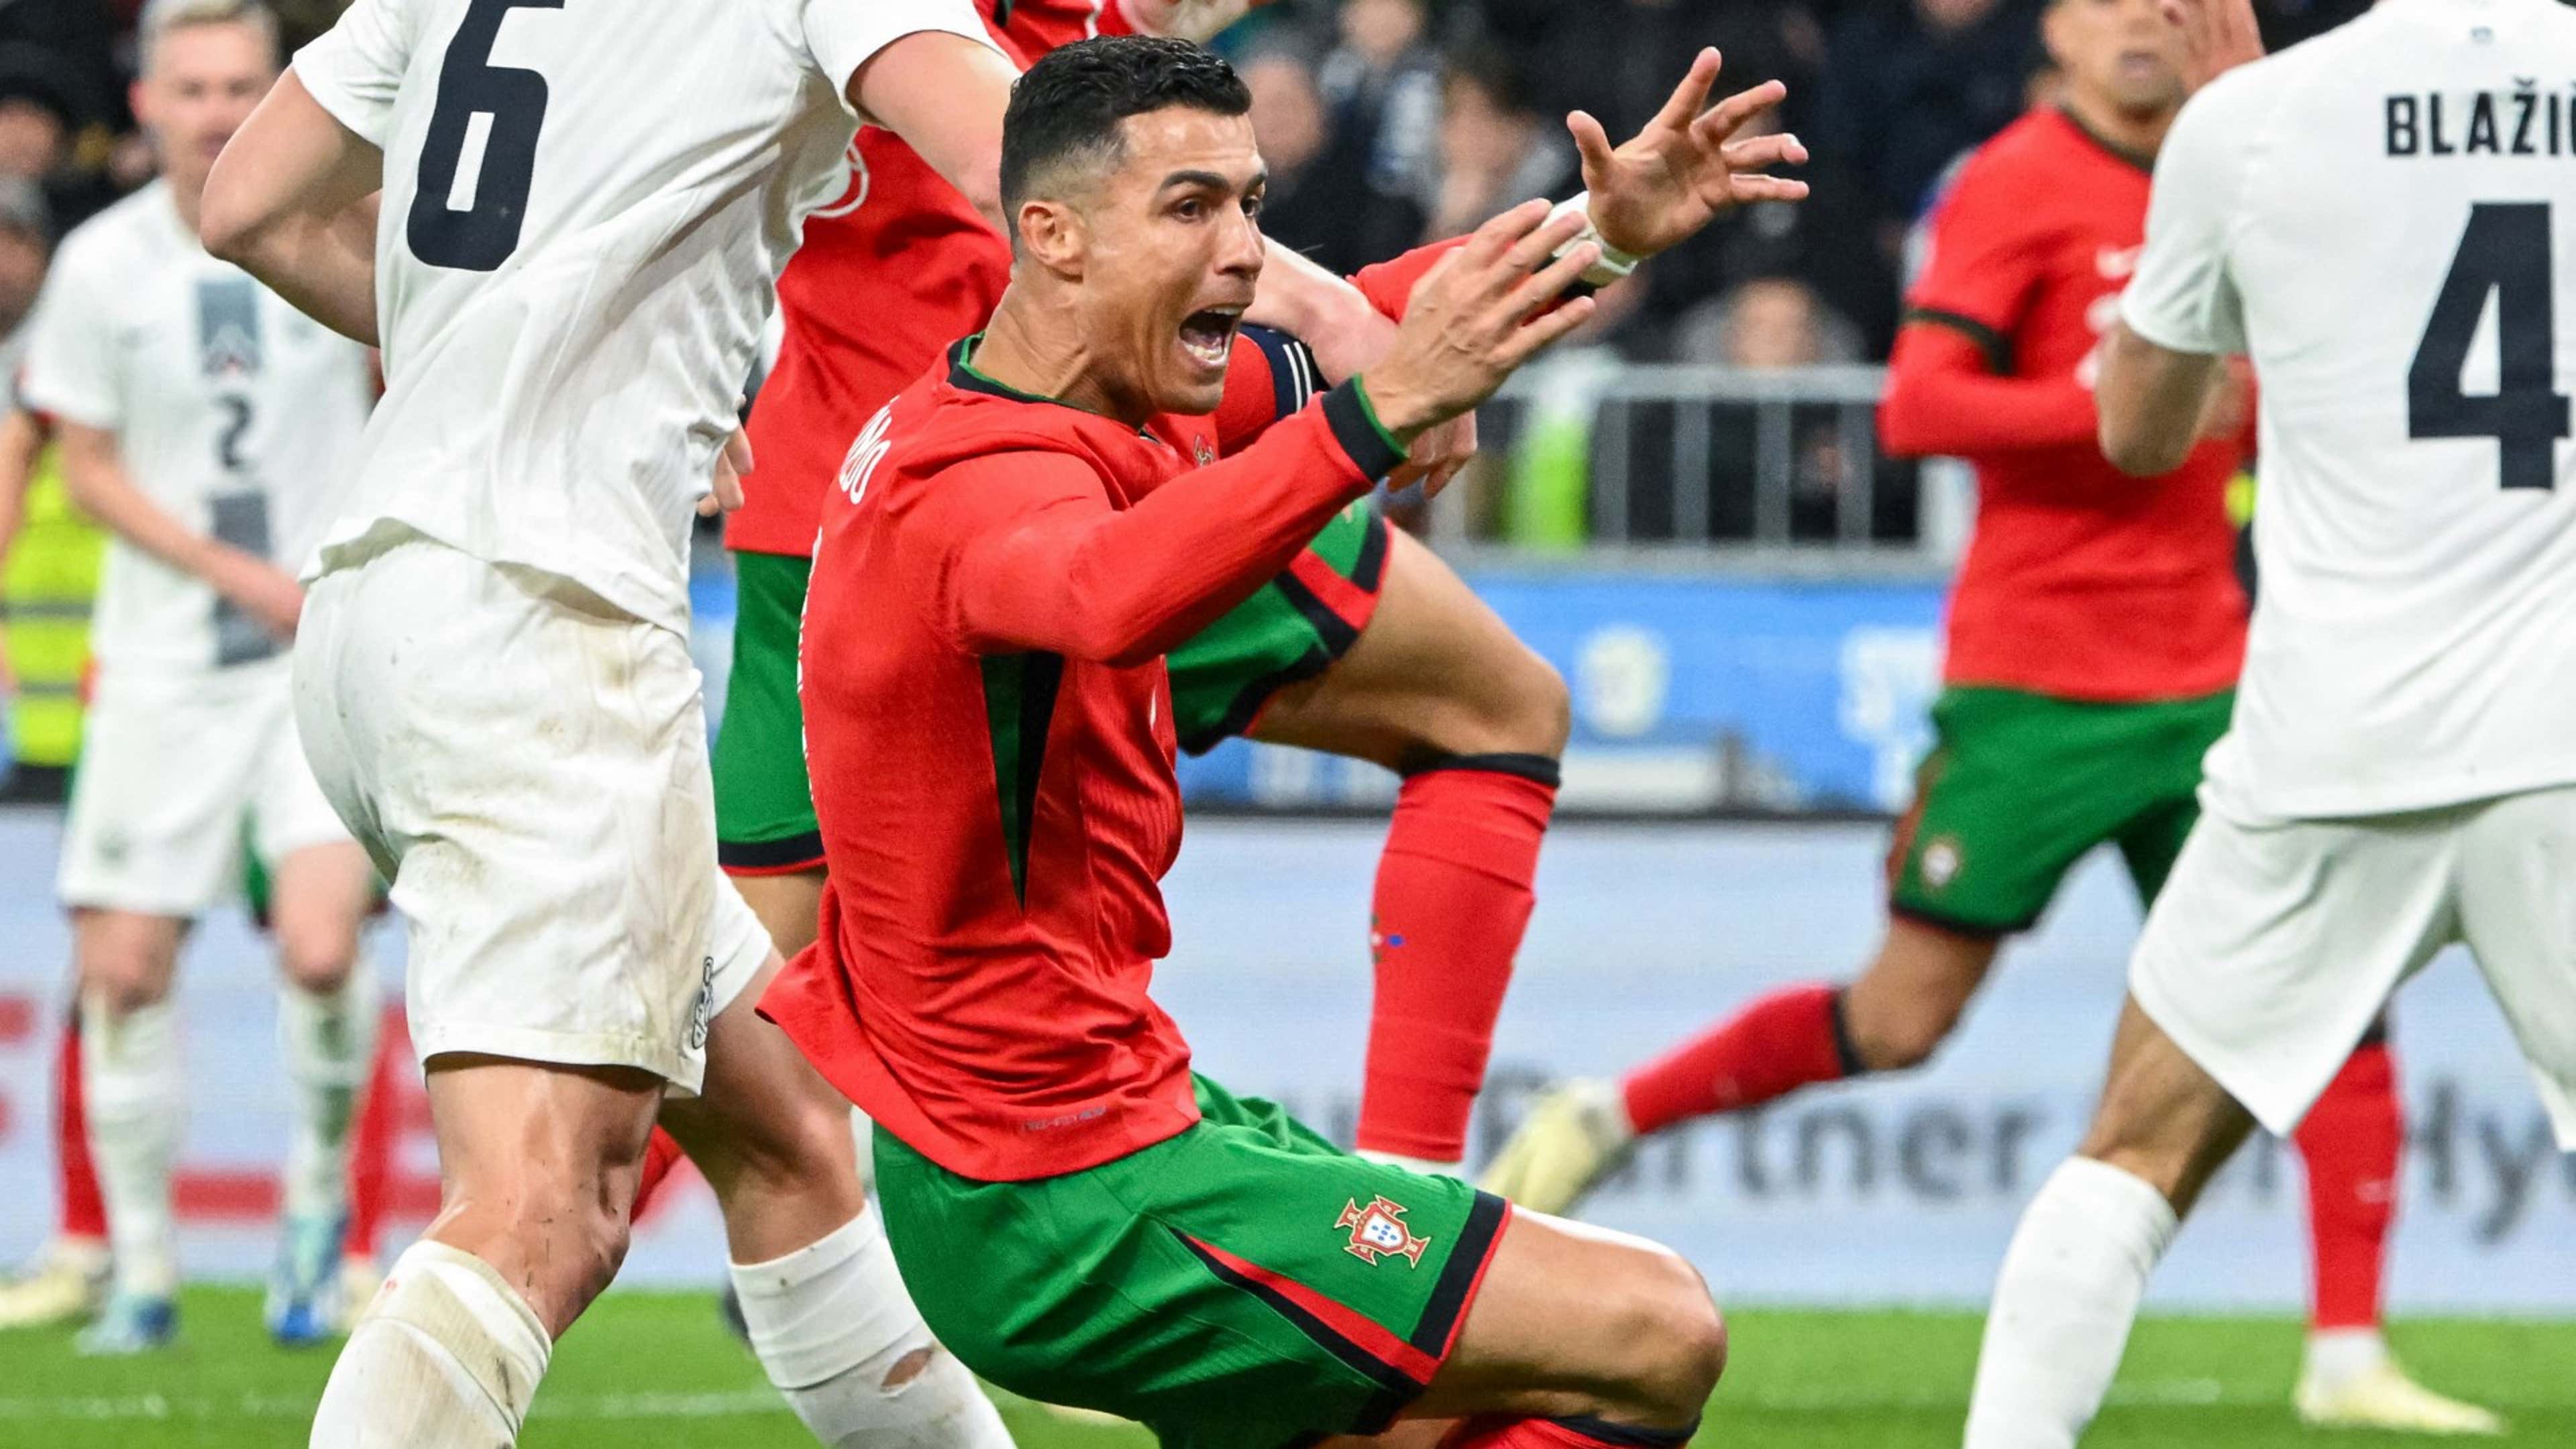 Ronaldo bị người hâm mộ chỉ trích sau trận thua của Bồ Đào Nha